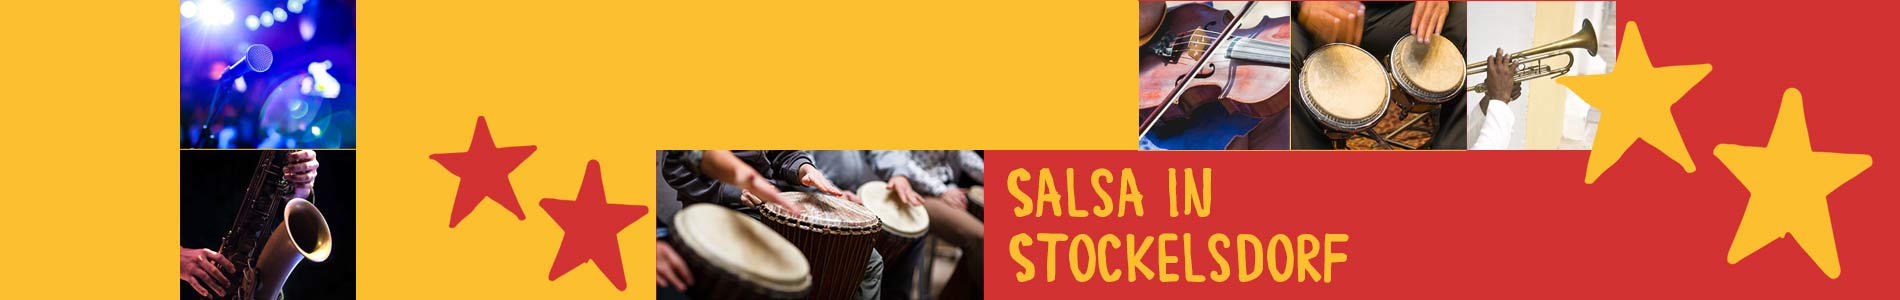 Salsa in Stockelsdorf – Salsa lernen und tanzen, Tanzkurse, Partys, Veranstaltungen